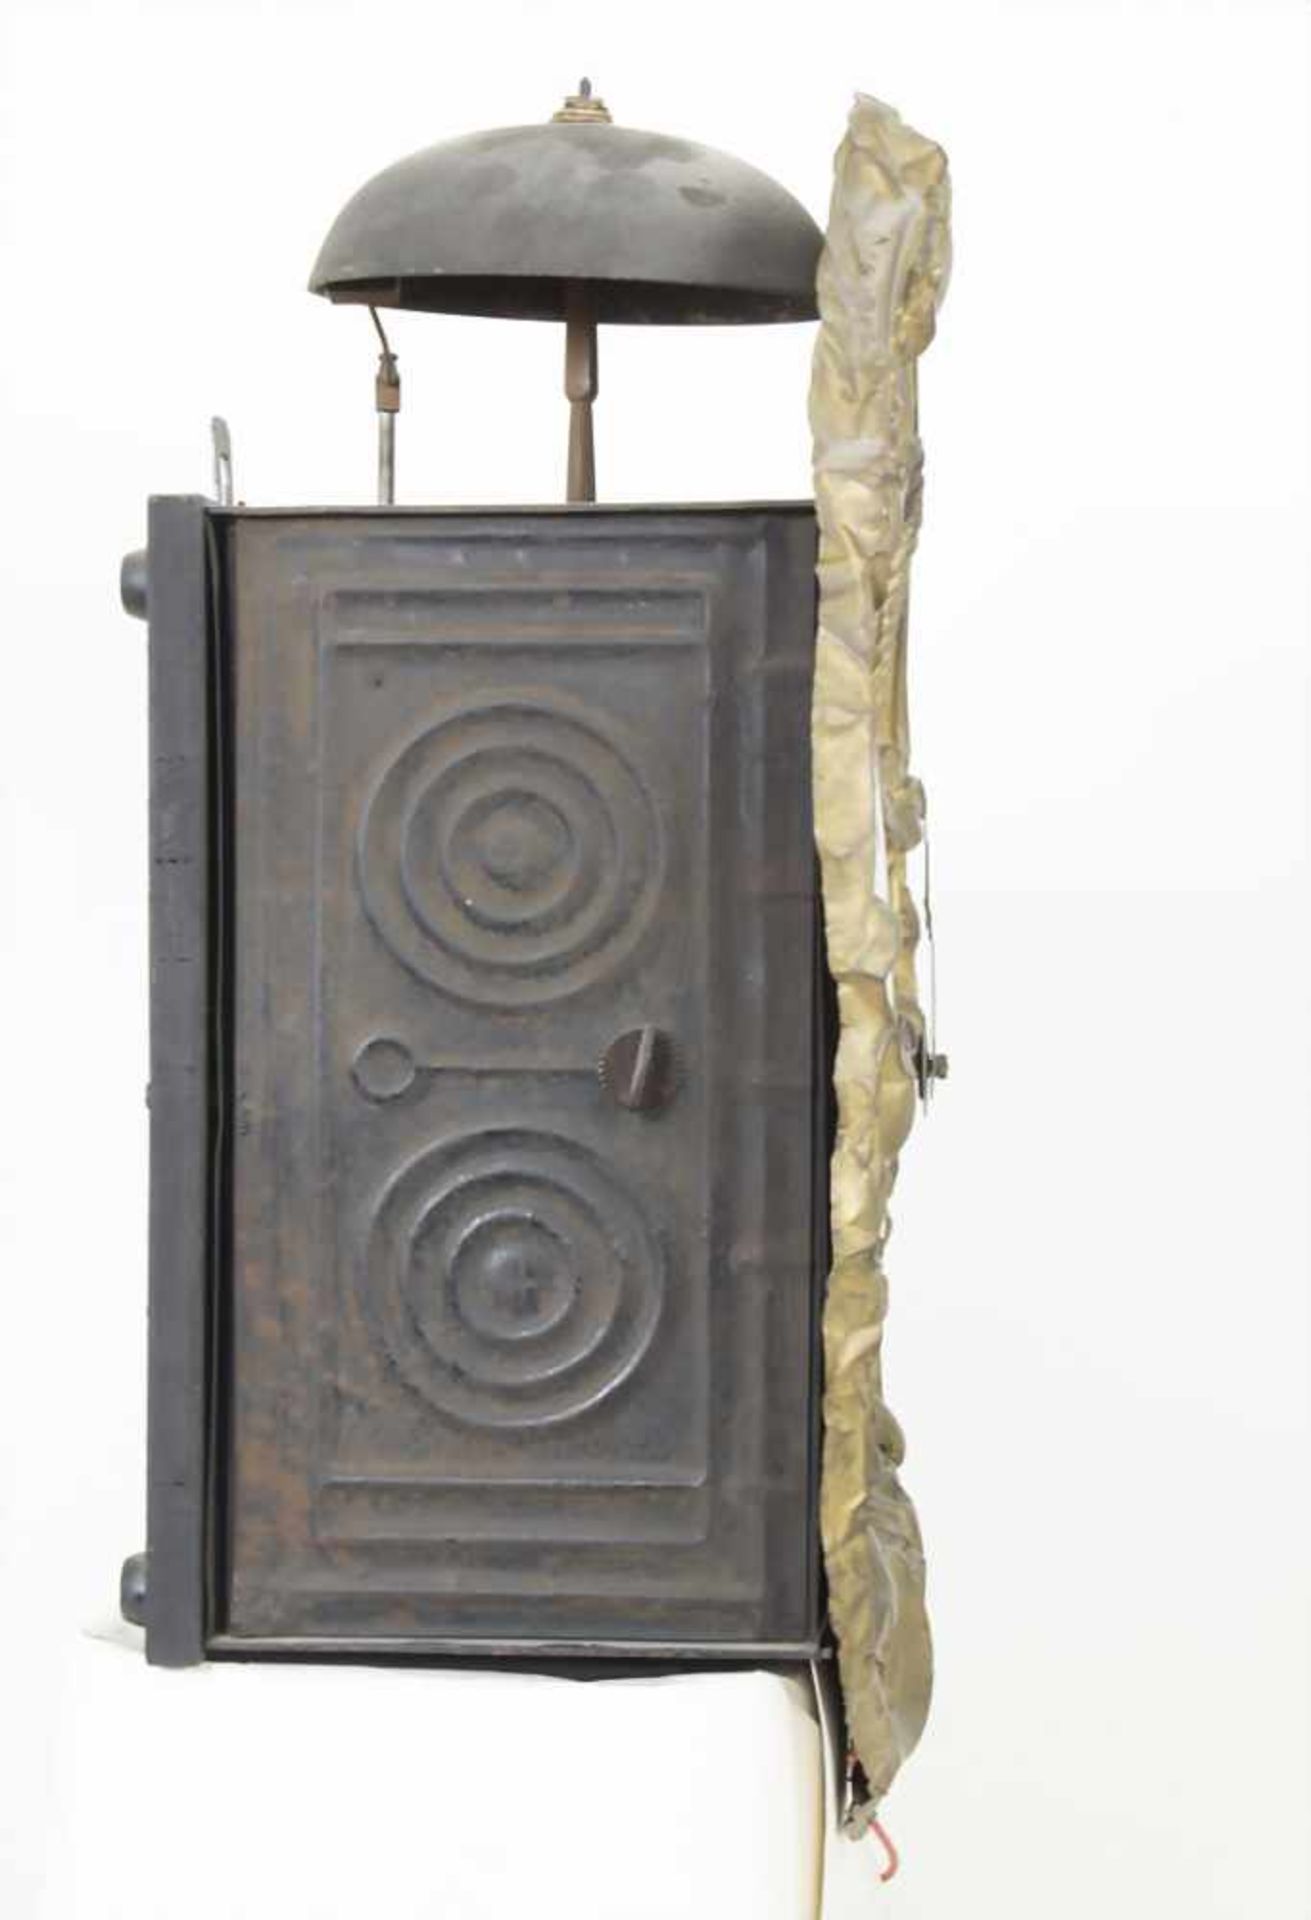 Comtoise/ French Wall Clock, Frankreich, 1. Hälfte 19. Jh.Gehäuse: geprägtes Messingblech,Uhrwerk: - Bild 8 aus 11